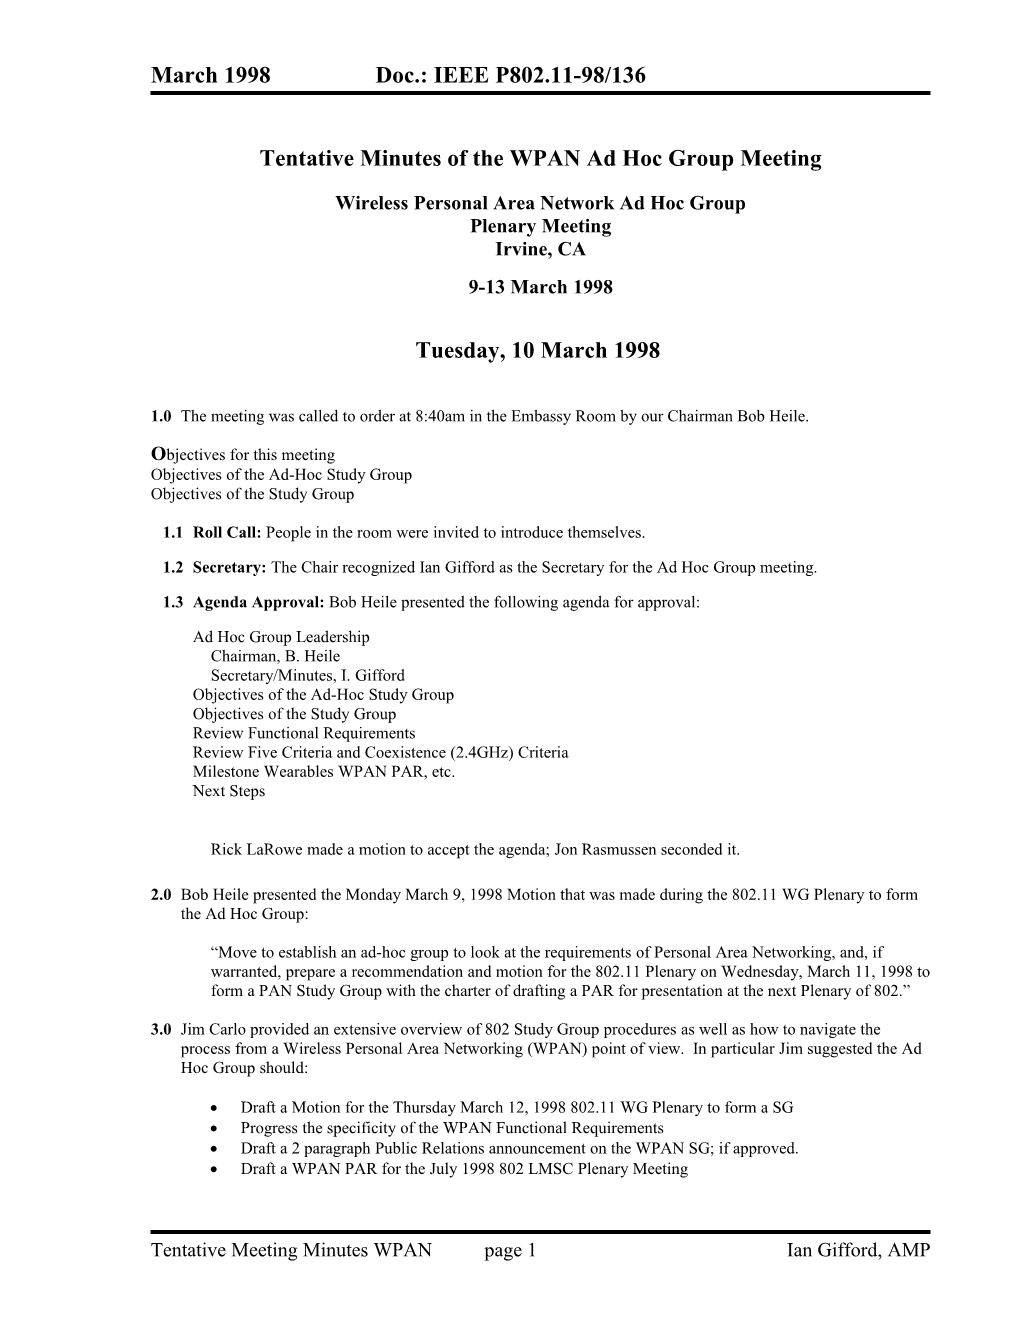 Meeting Notes 3-10-98 IEEE 802